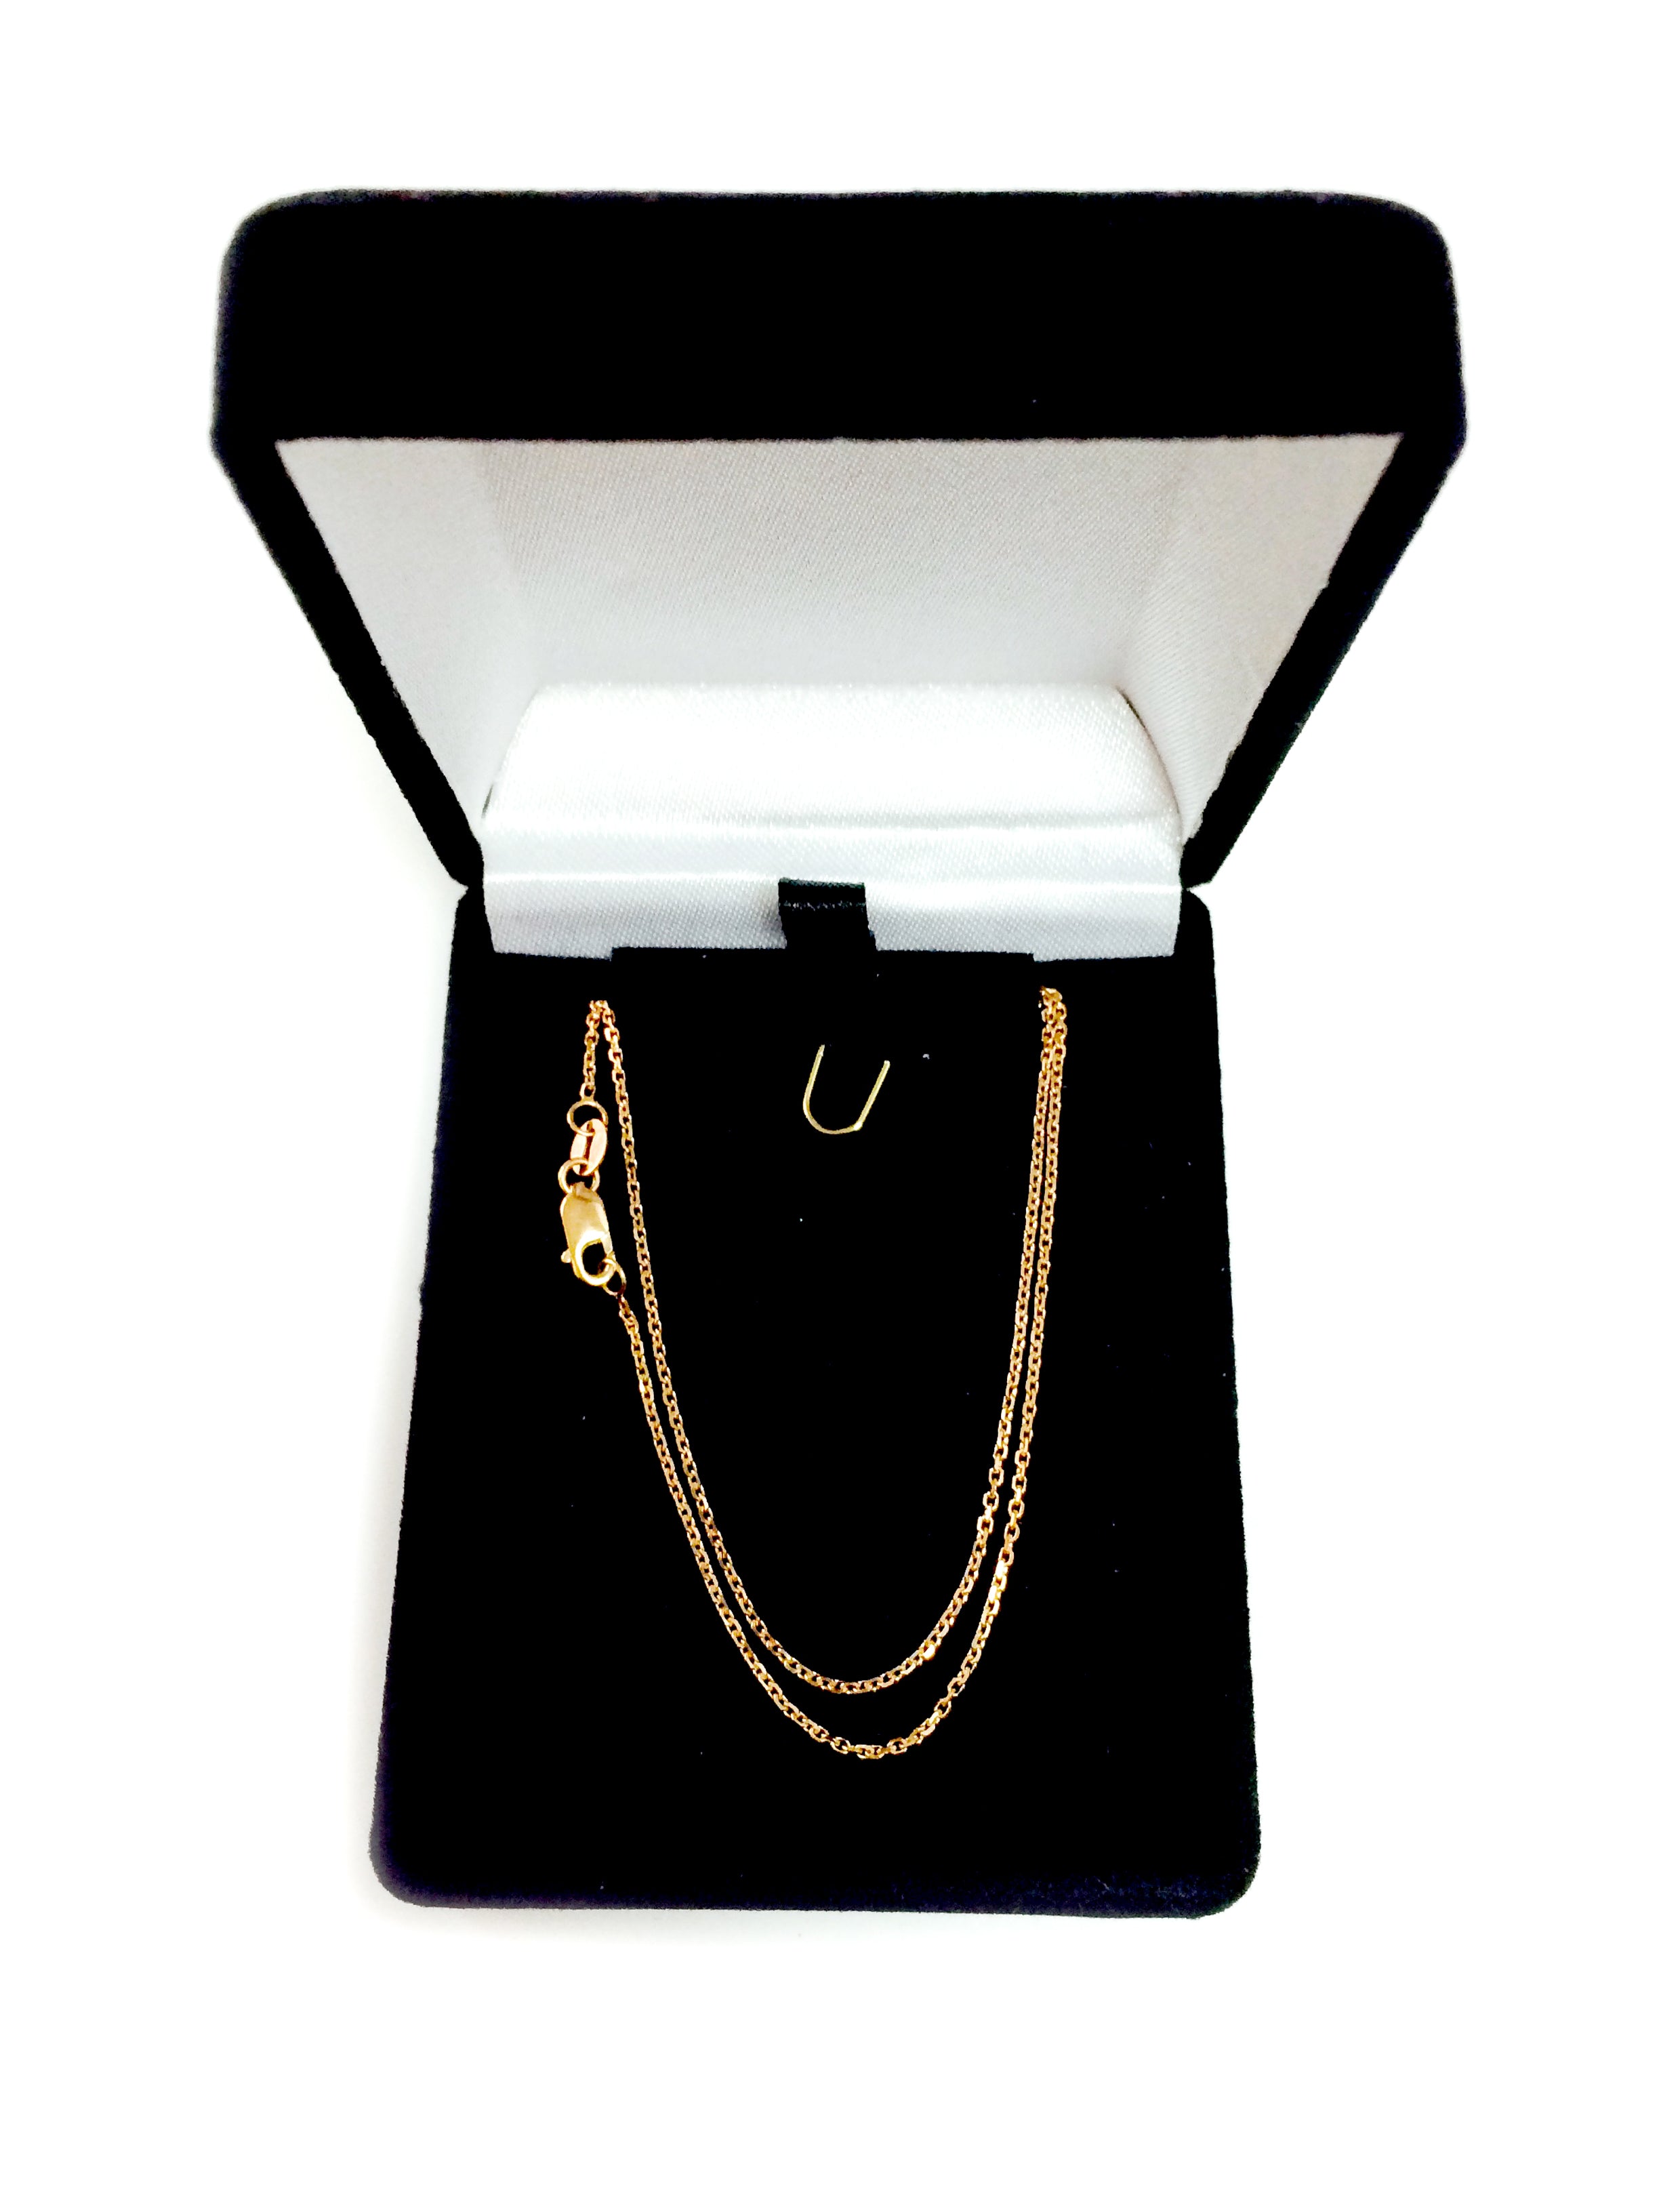 14k Rose Gold Cable Link Chain Halsband, 1,1 mm fina designersmycken för män och kvinnor